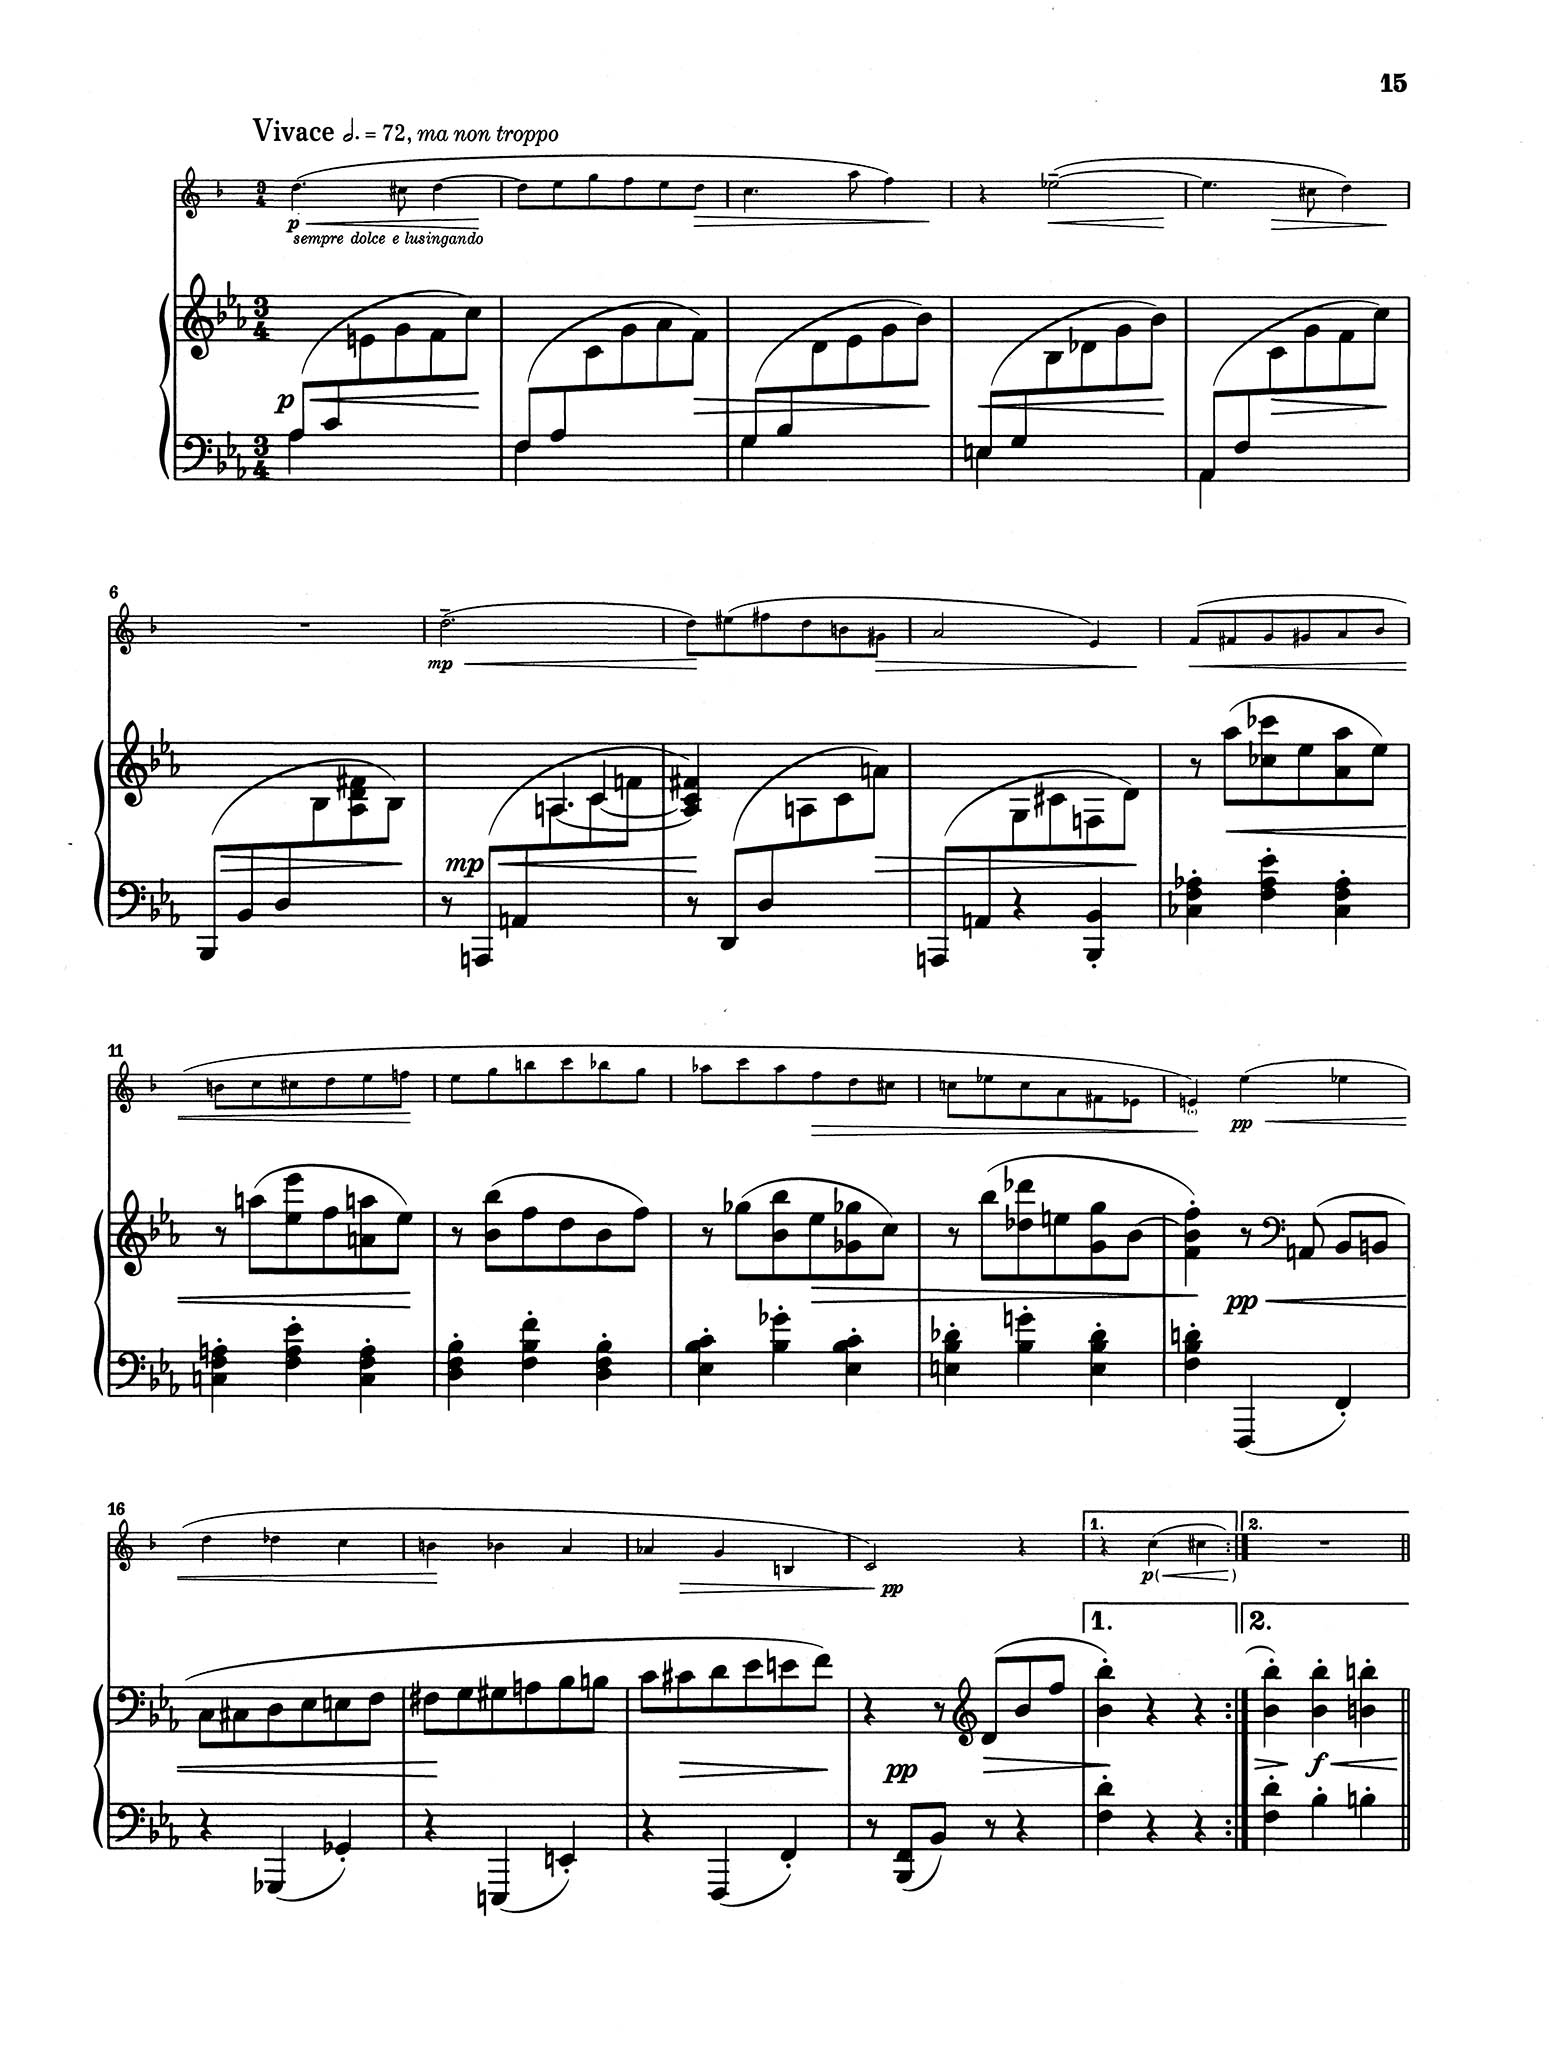 Sonata in A-flat Major, Op. 48 No. 1 - Movement 2